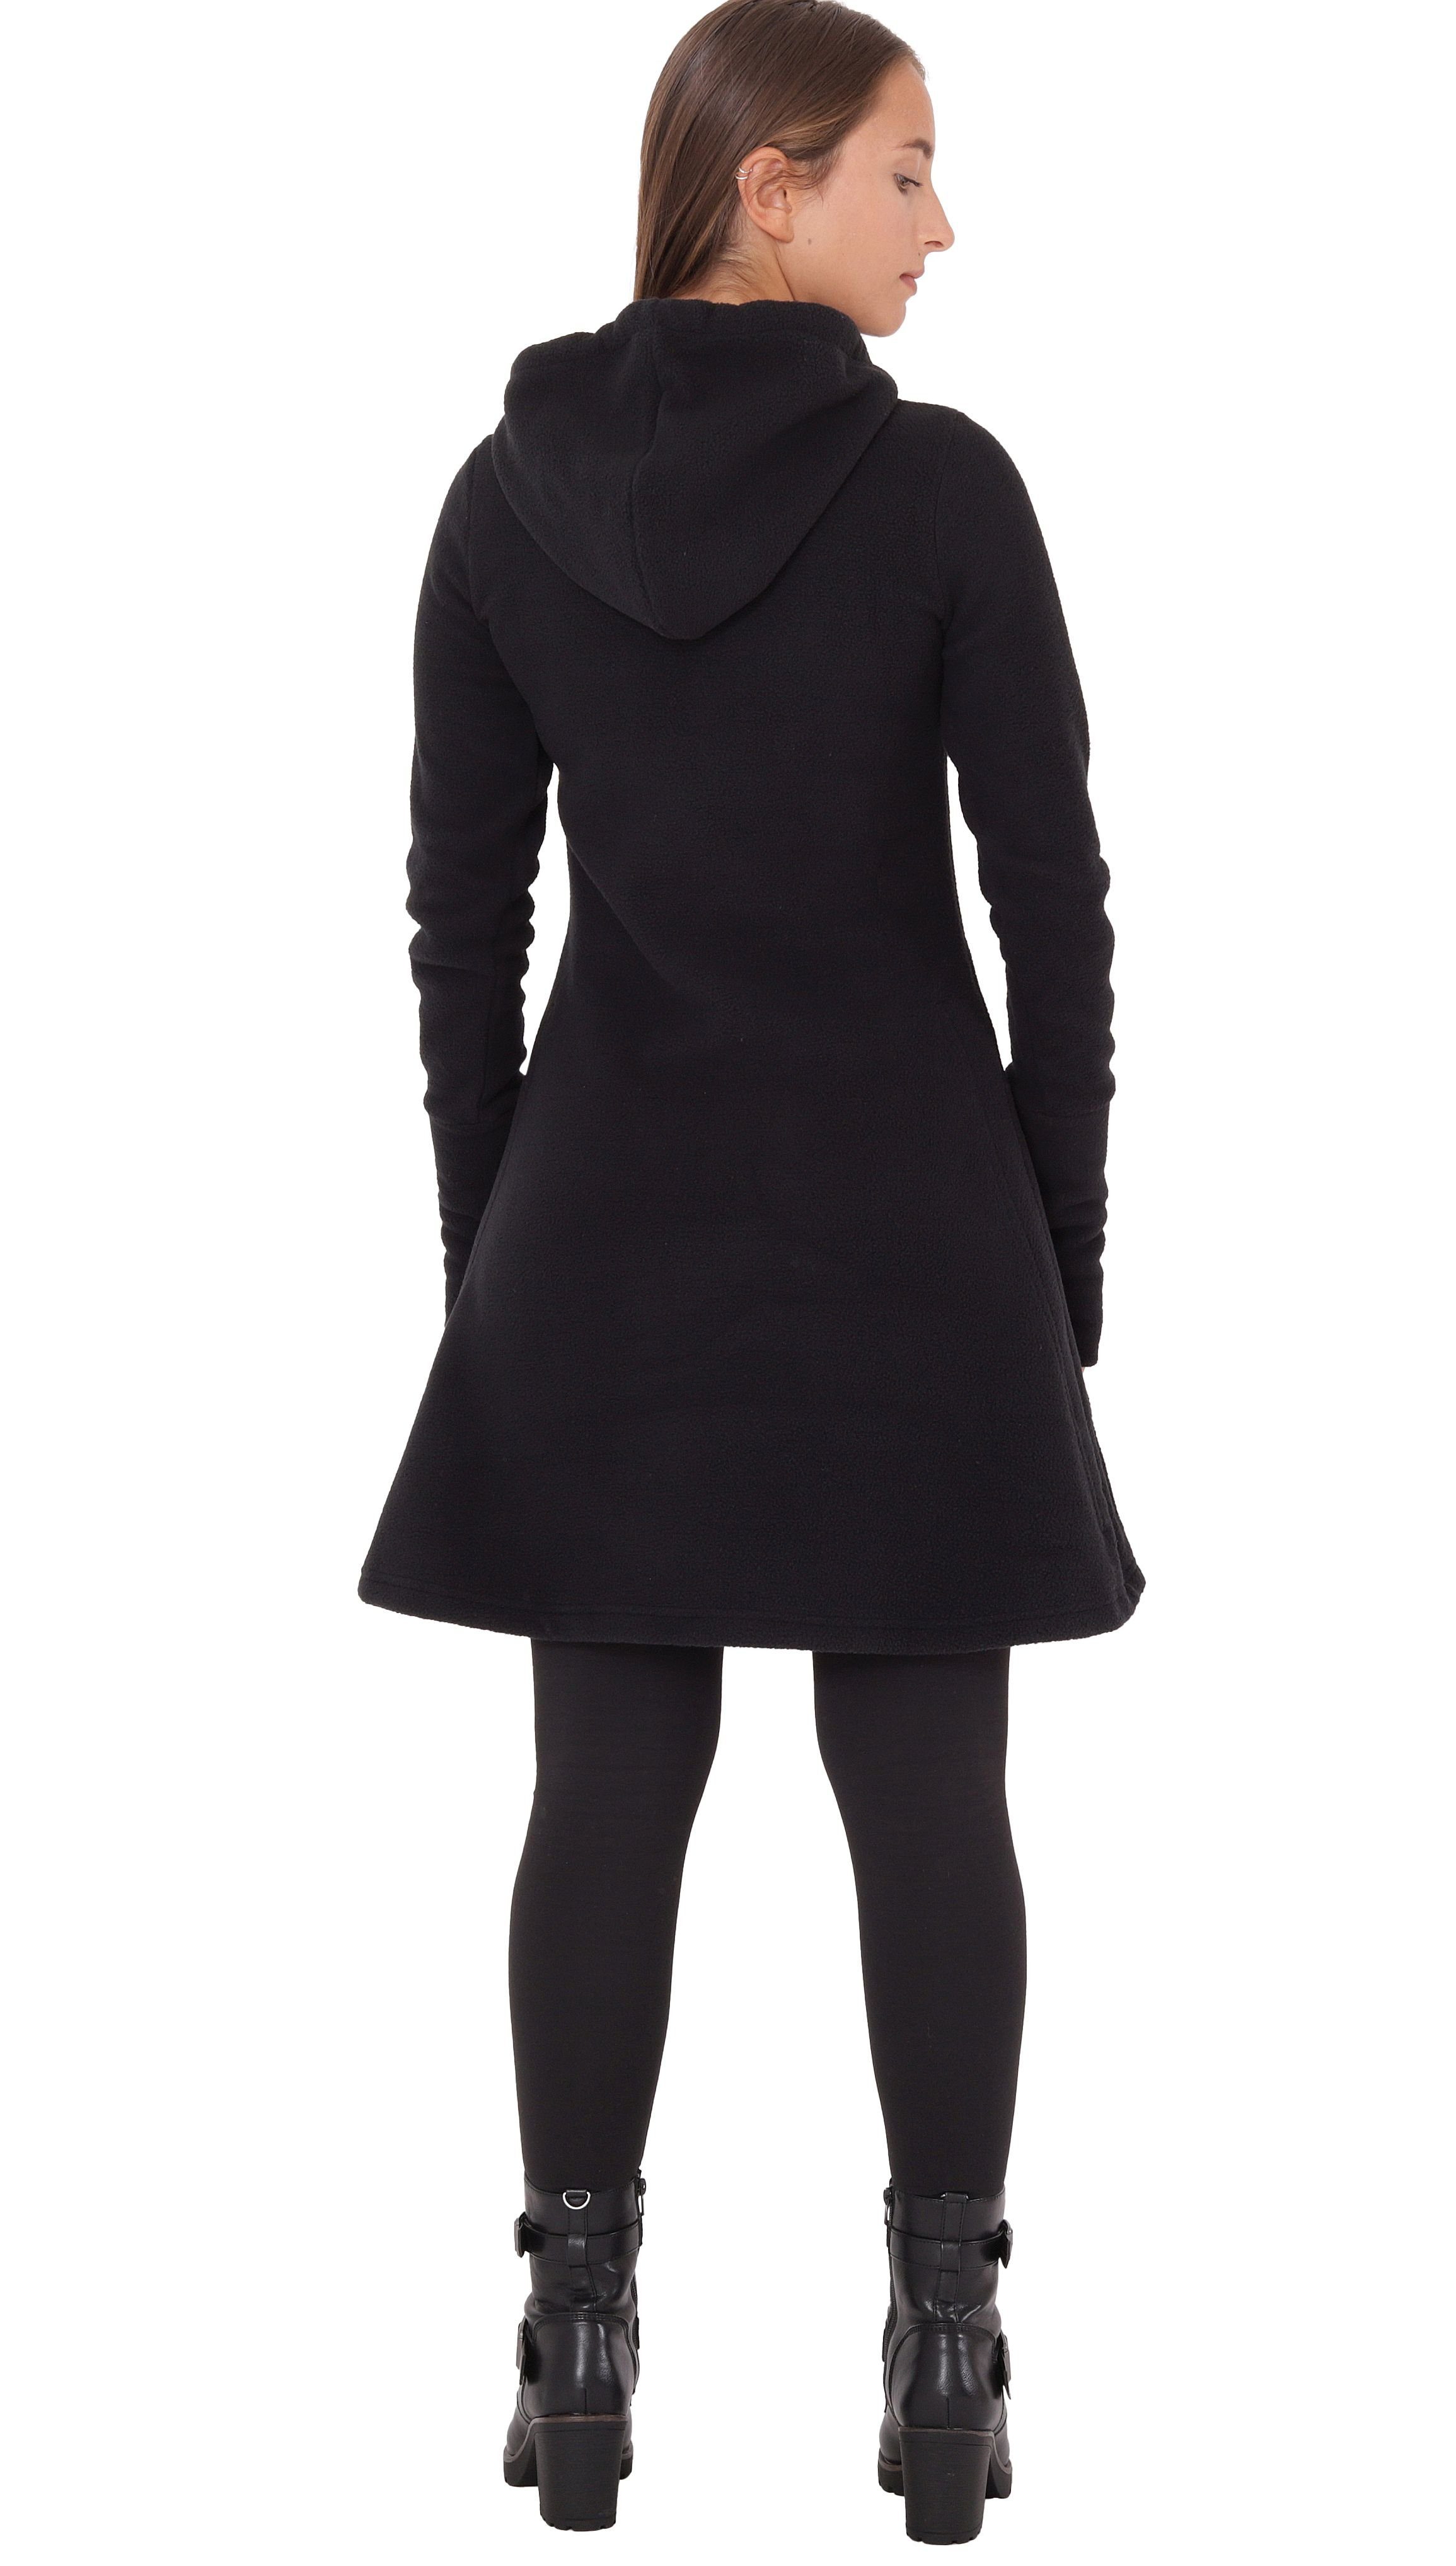 PUREWONDER A-Linien-Kleid Kapuzenkleid Traumfänger Schwarz dr31 Fleece Winterkleid mit